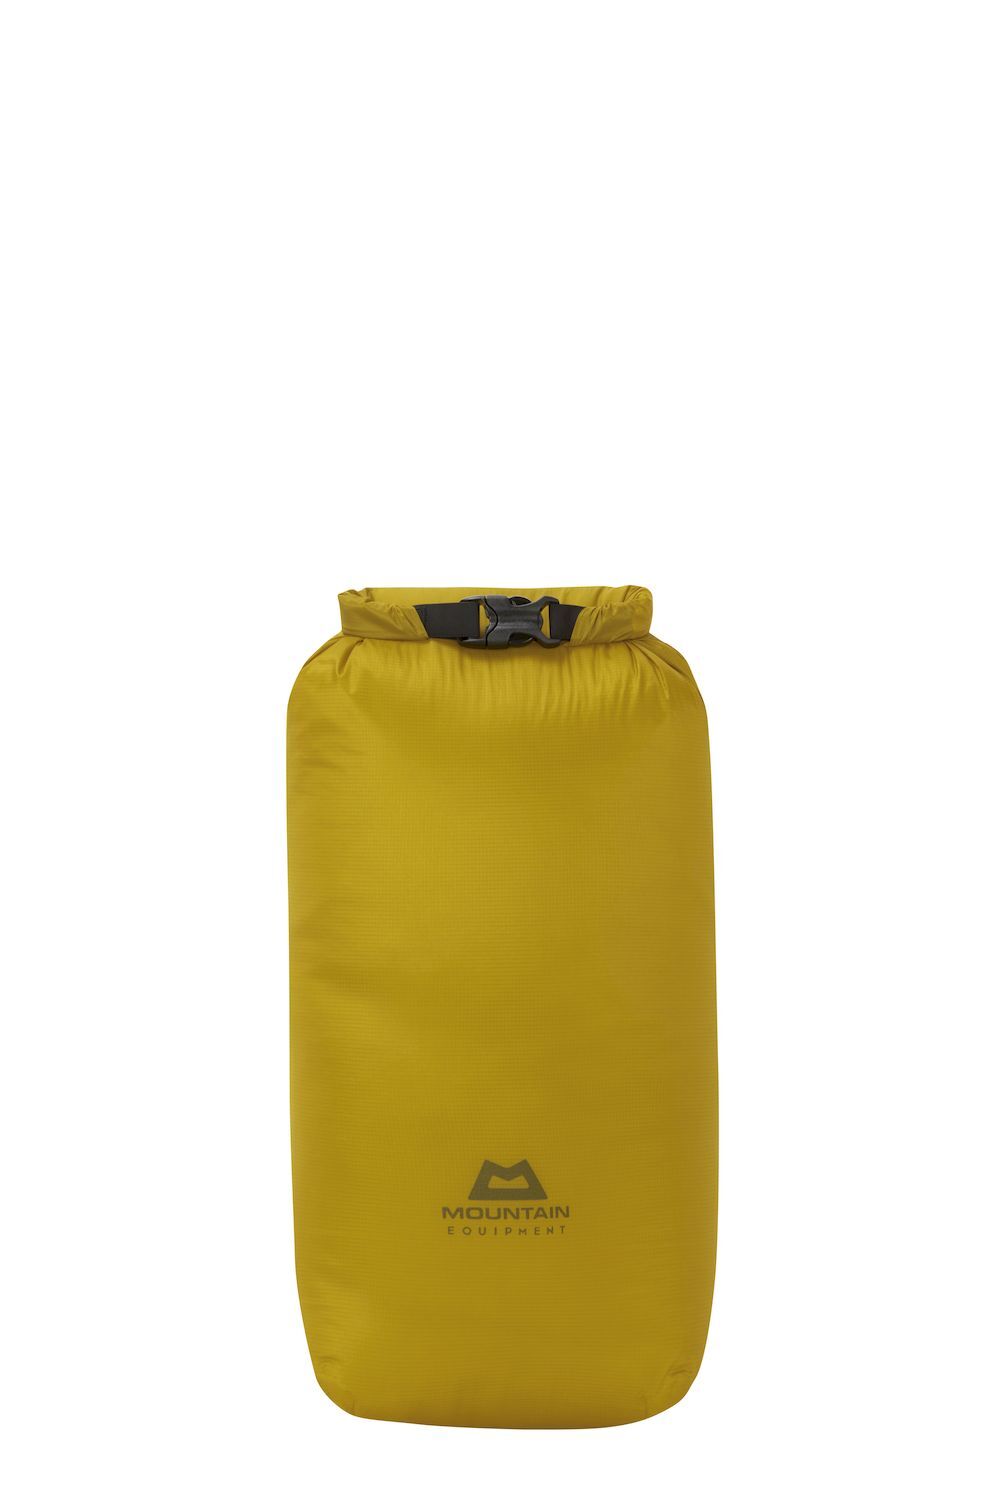 Mountain Equipment Lightweight Drybag 20L - Waterproof bag